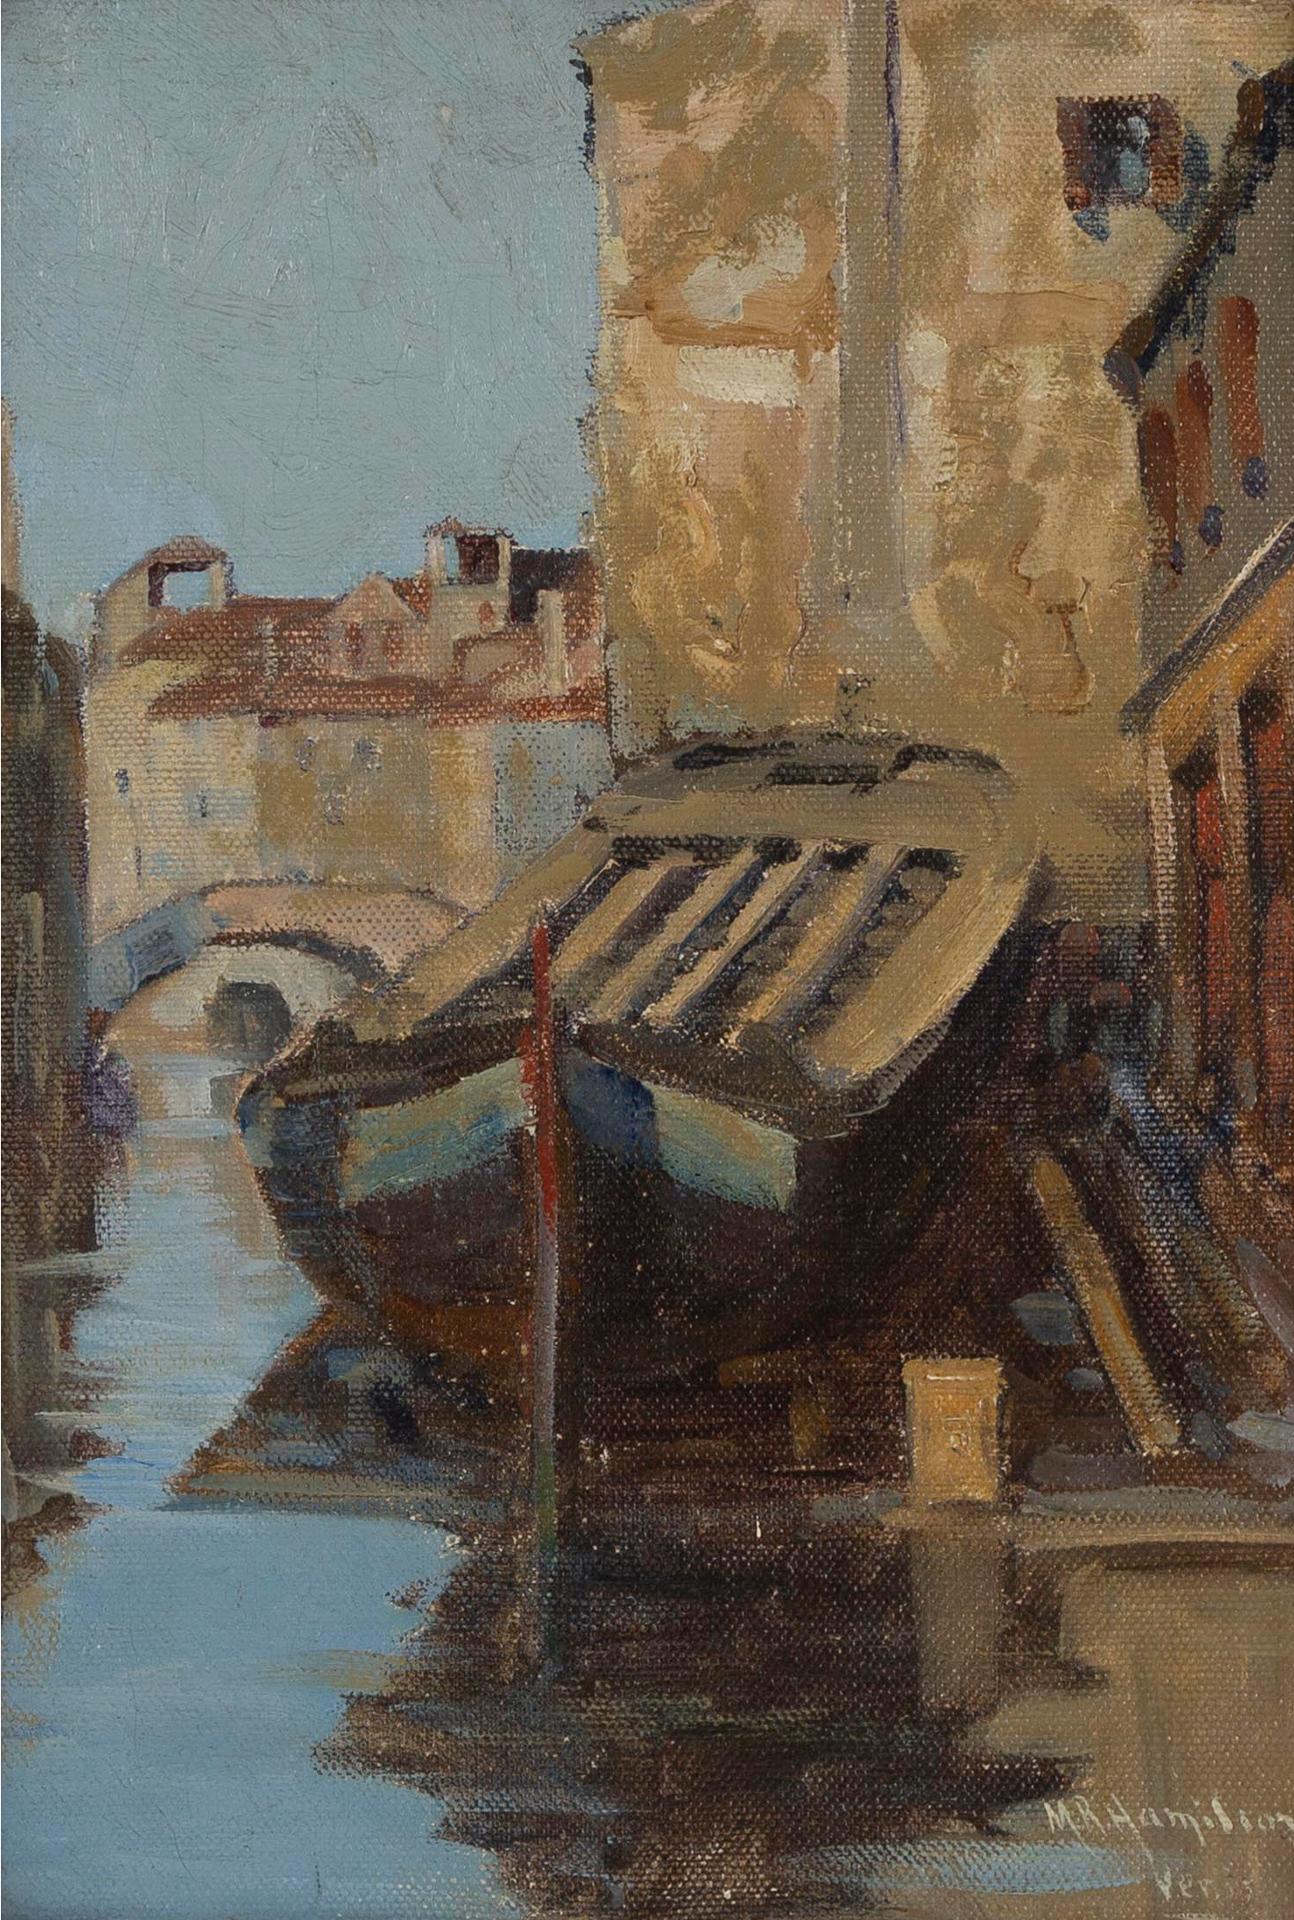 Mary Ritter Hamilton (1873-1954) - Boat, Venice